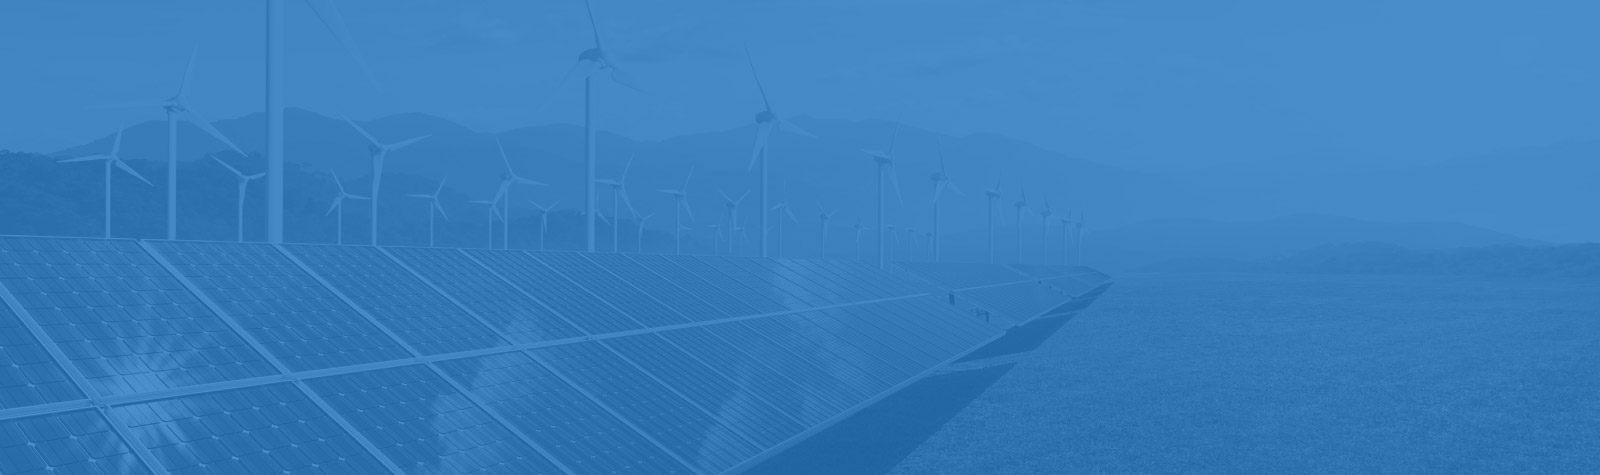 Come creare una Comunità Energetica Rinnovabile